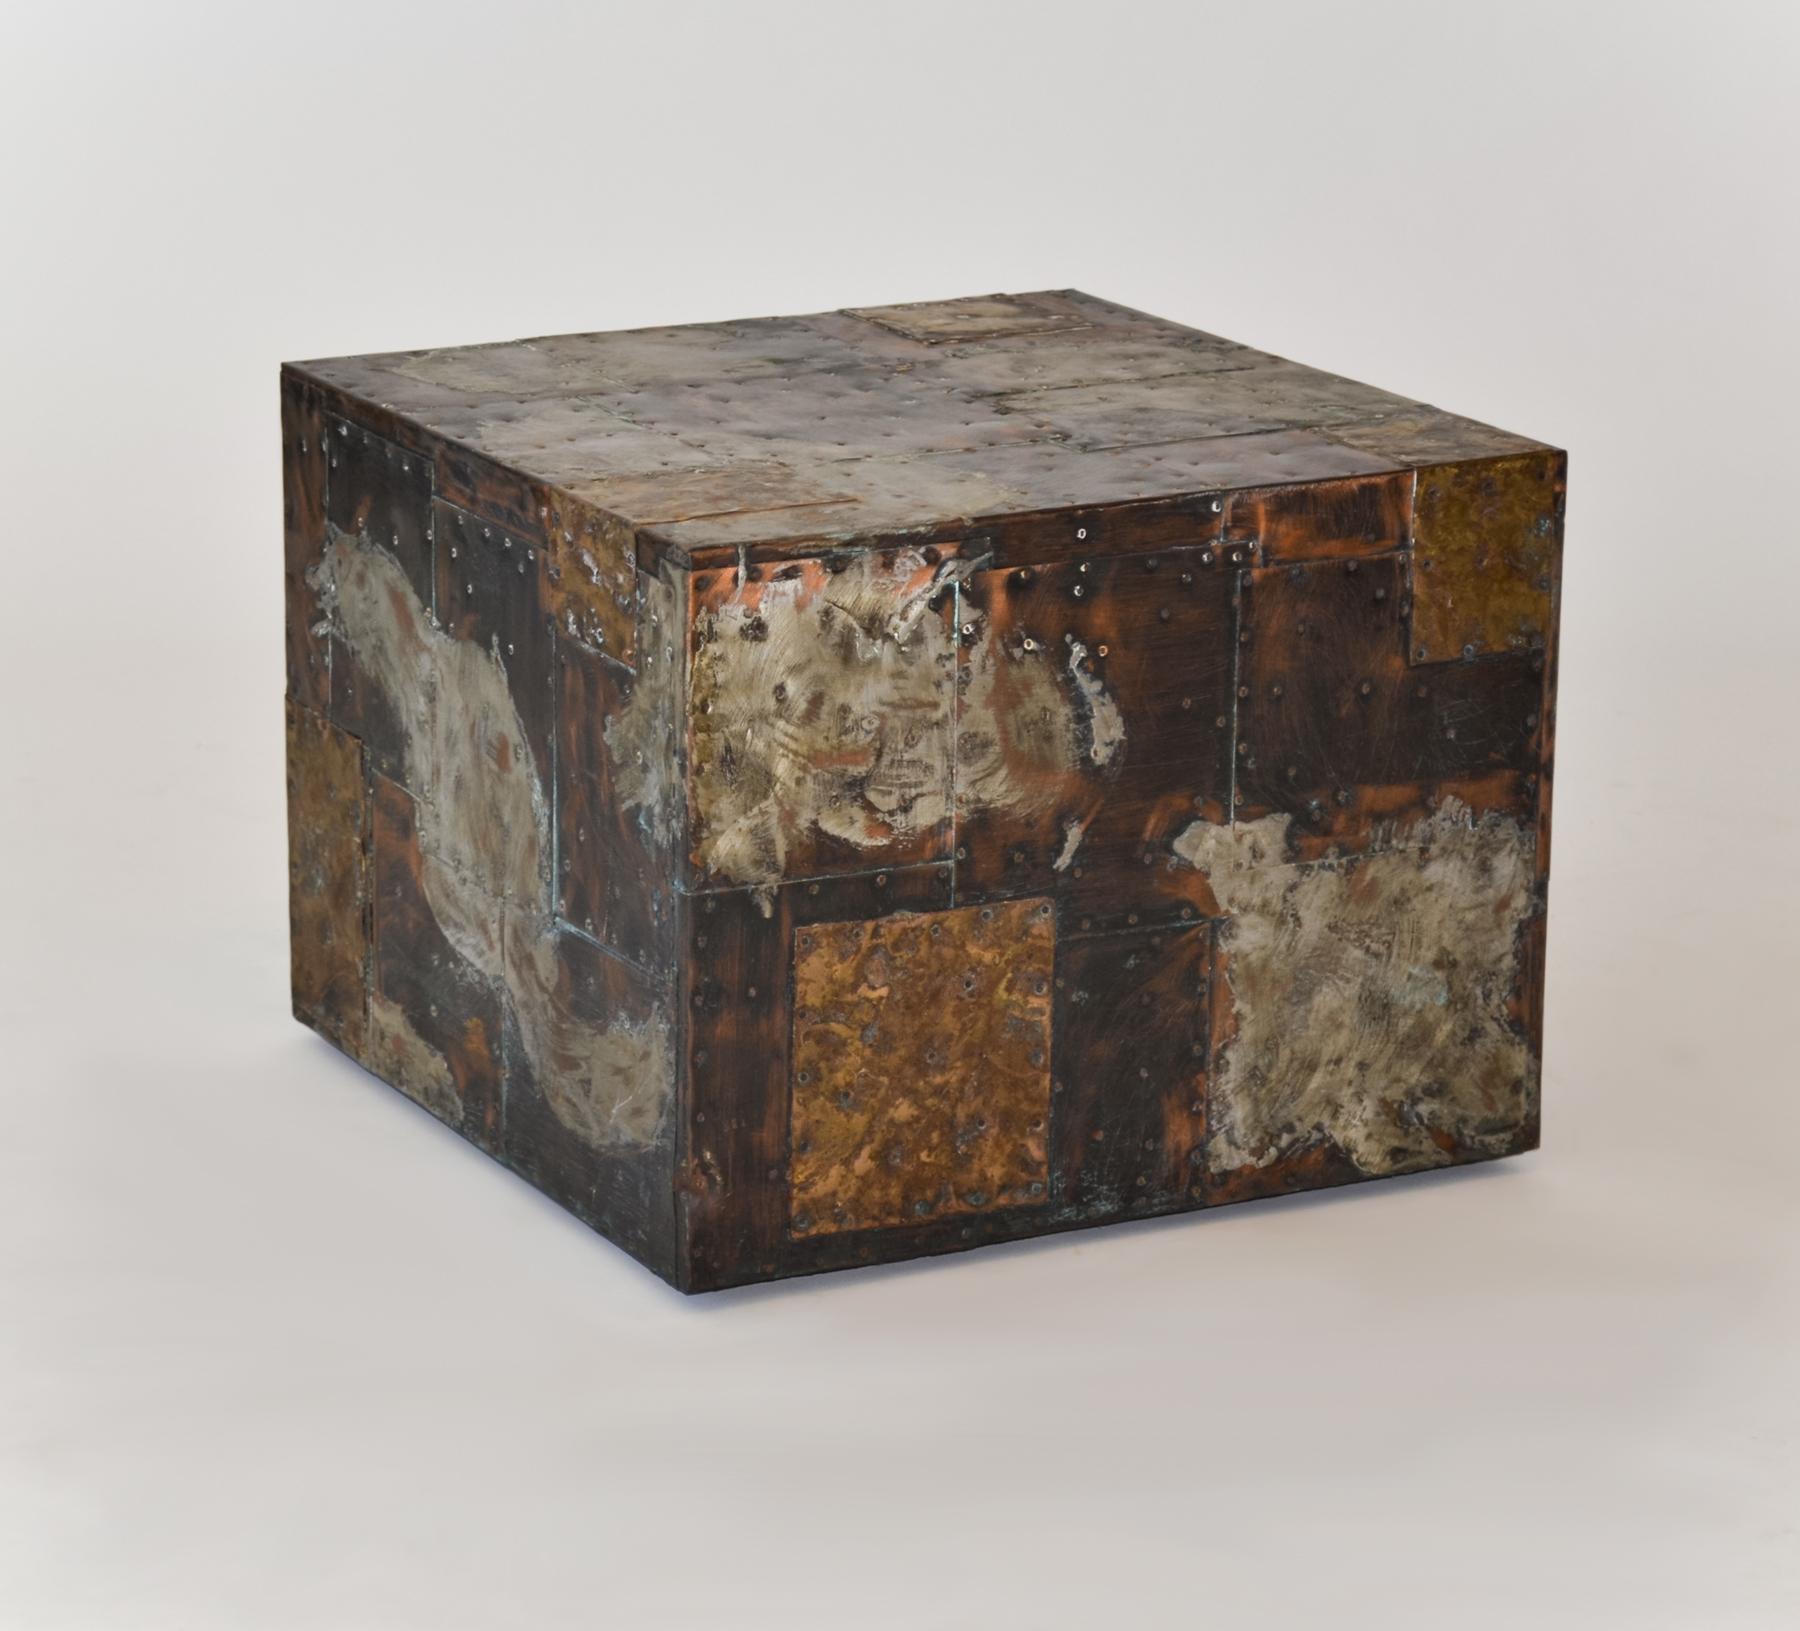 Paul Evans For Directional Metal Patchwork Cube Side Table 1967
Table cubique en métal patchwork d'acier, de cuivre et de laiton par Paul Evans. Rarement vu sans insert en ardoise. 
La table présente les feuilles de cuivre clouées, déformées à la